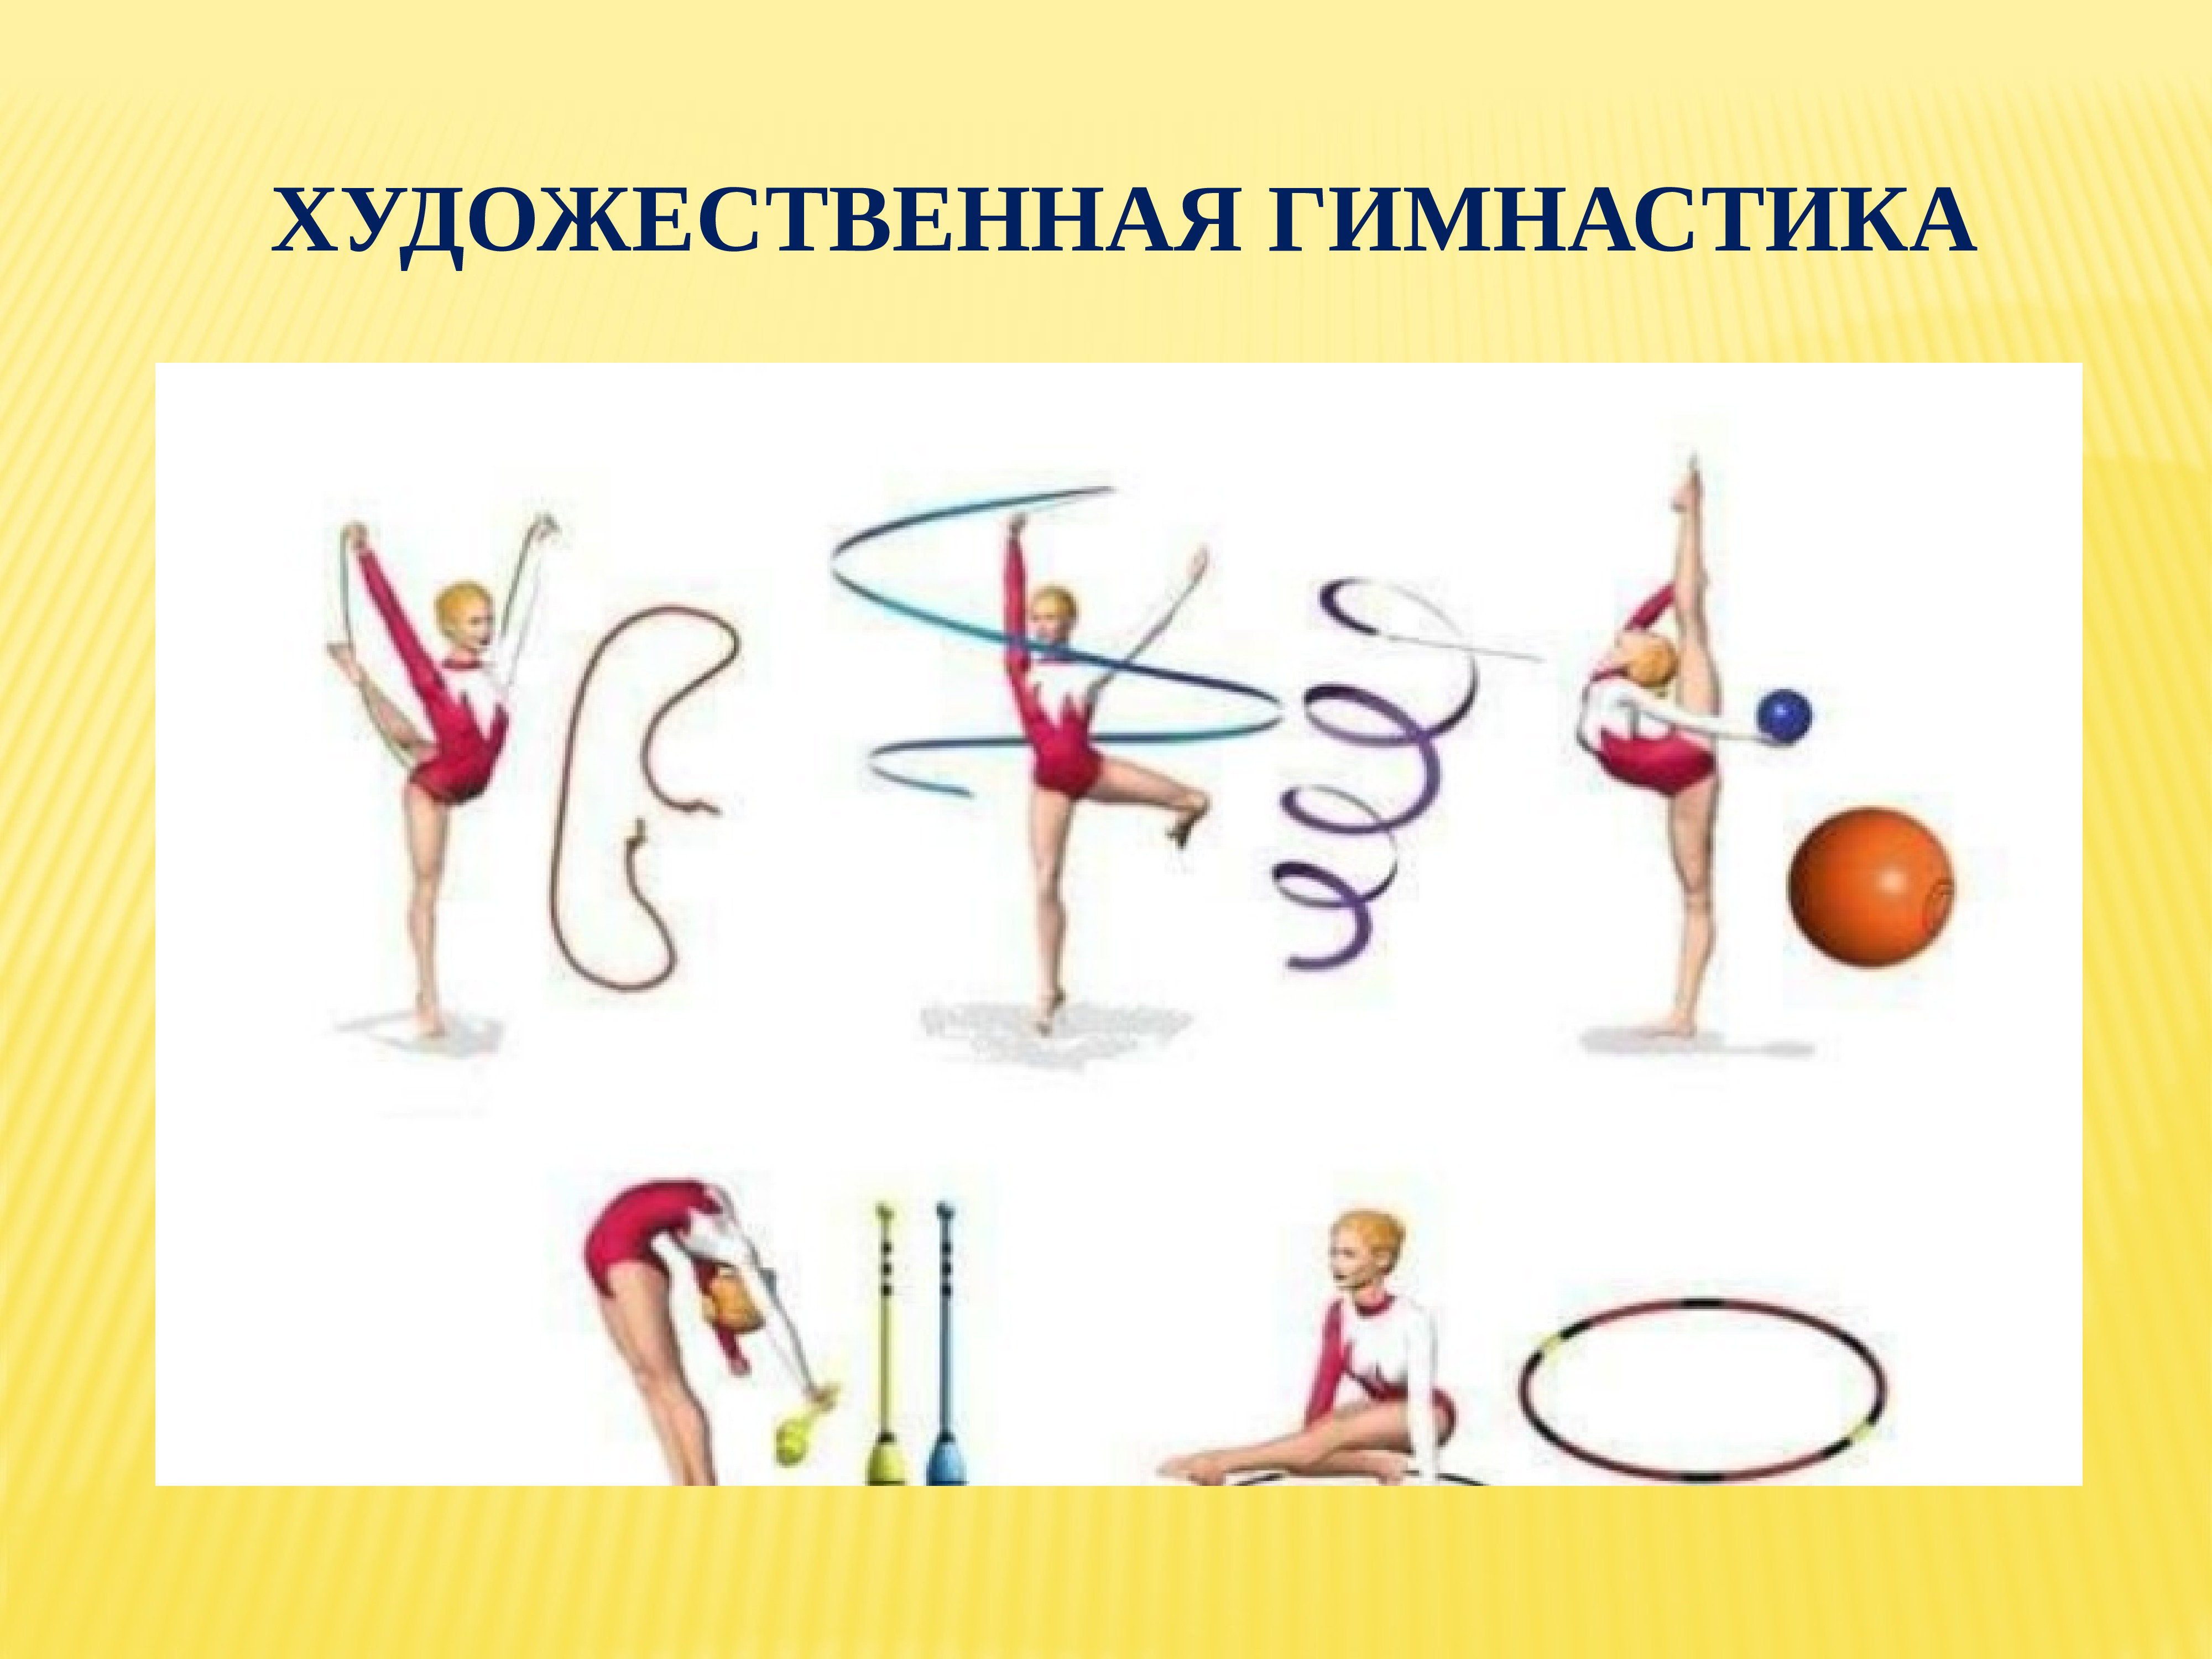 Гимнастические упражнения с гимнастическими предметами